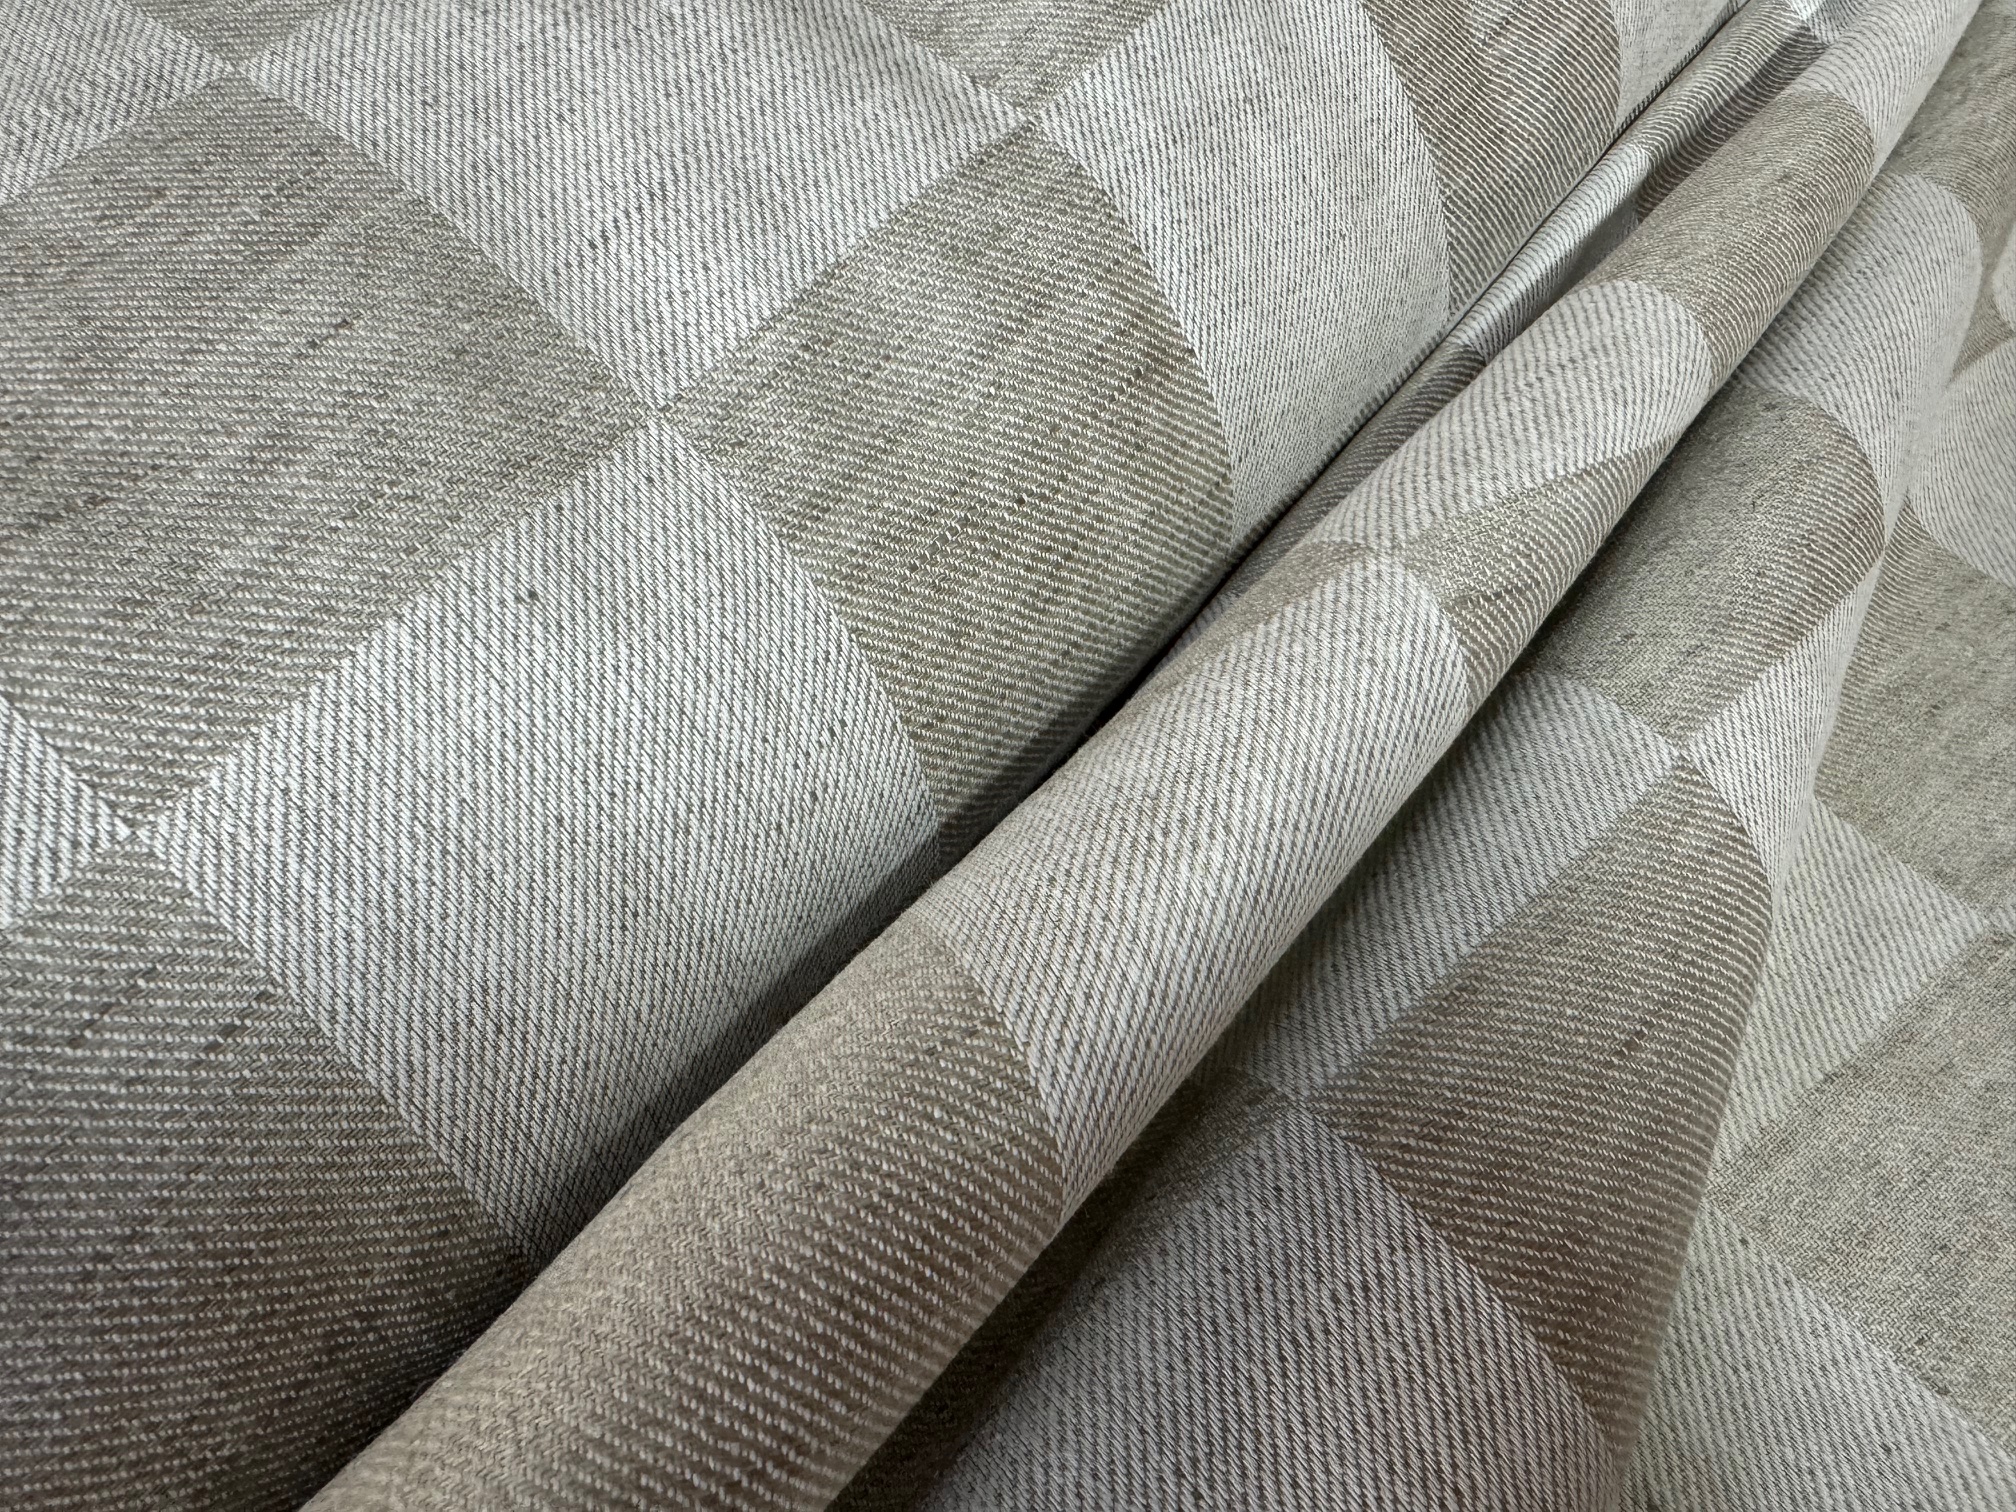 Table Linen (50% linen + 50% cotton), art. 101074, weight 210 g/m², width 160cm.  Price per roll 10m, VAT incl.